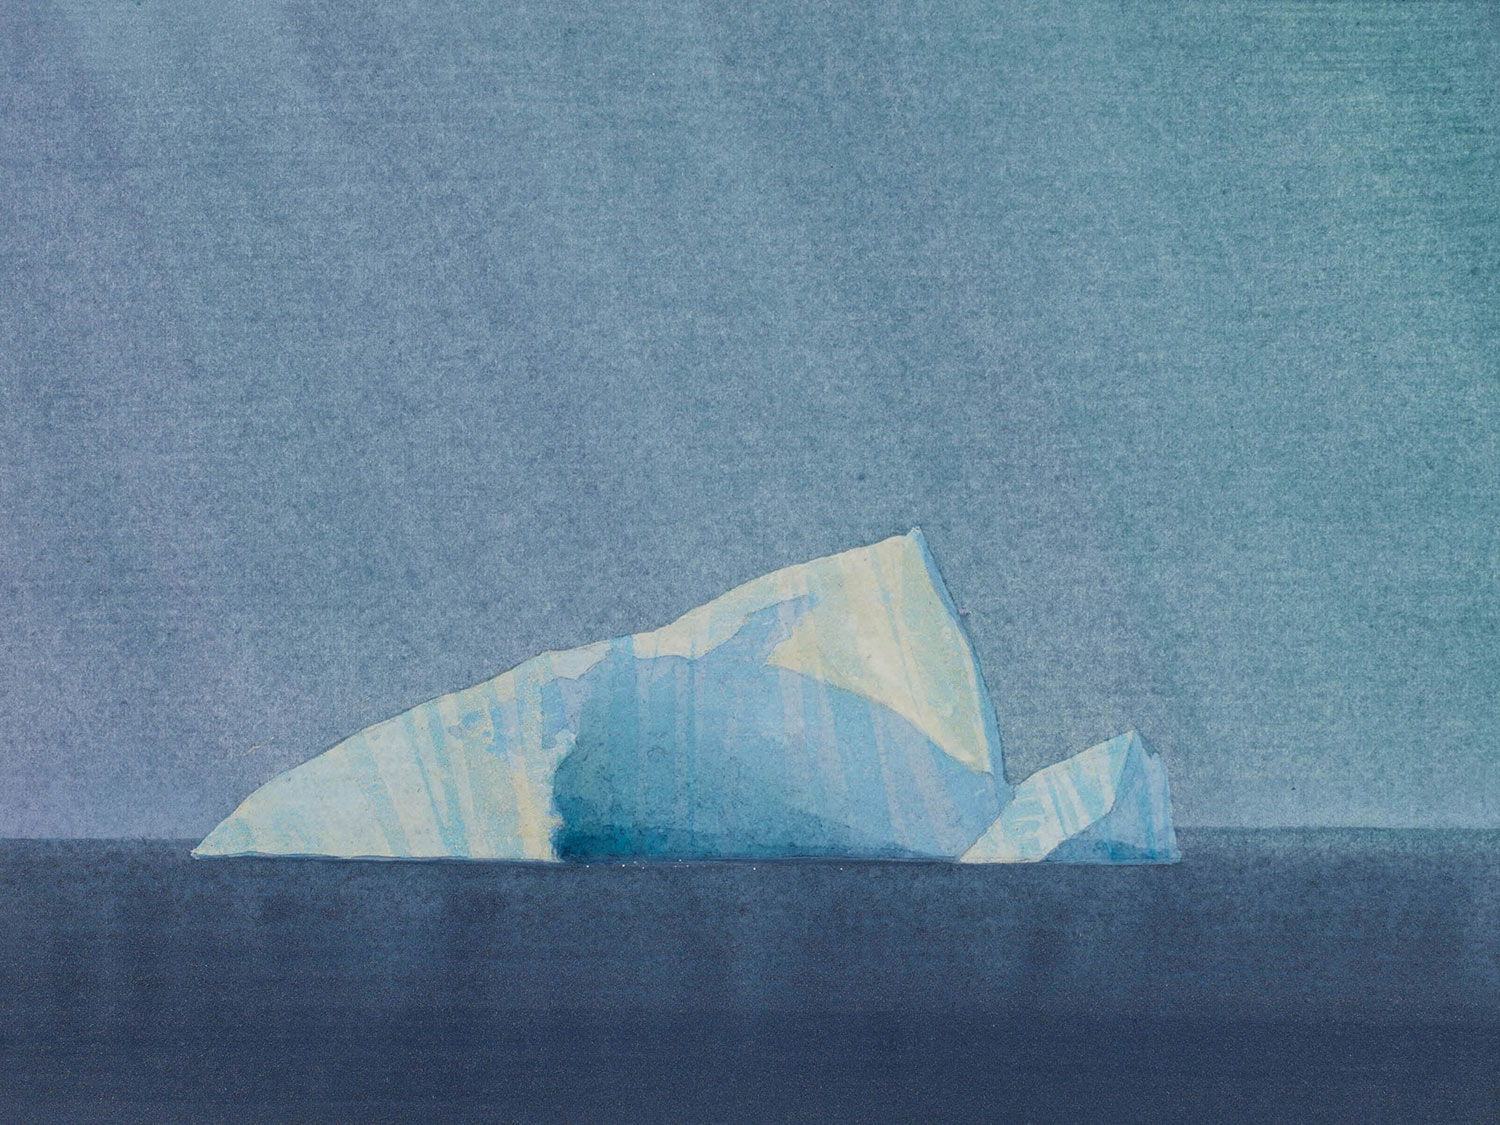 Nicholas-Jones-Iceberg-off-Cape-Mercy-2-2018-15-x-20cm